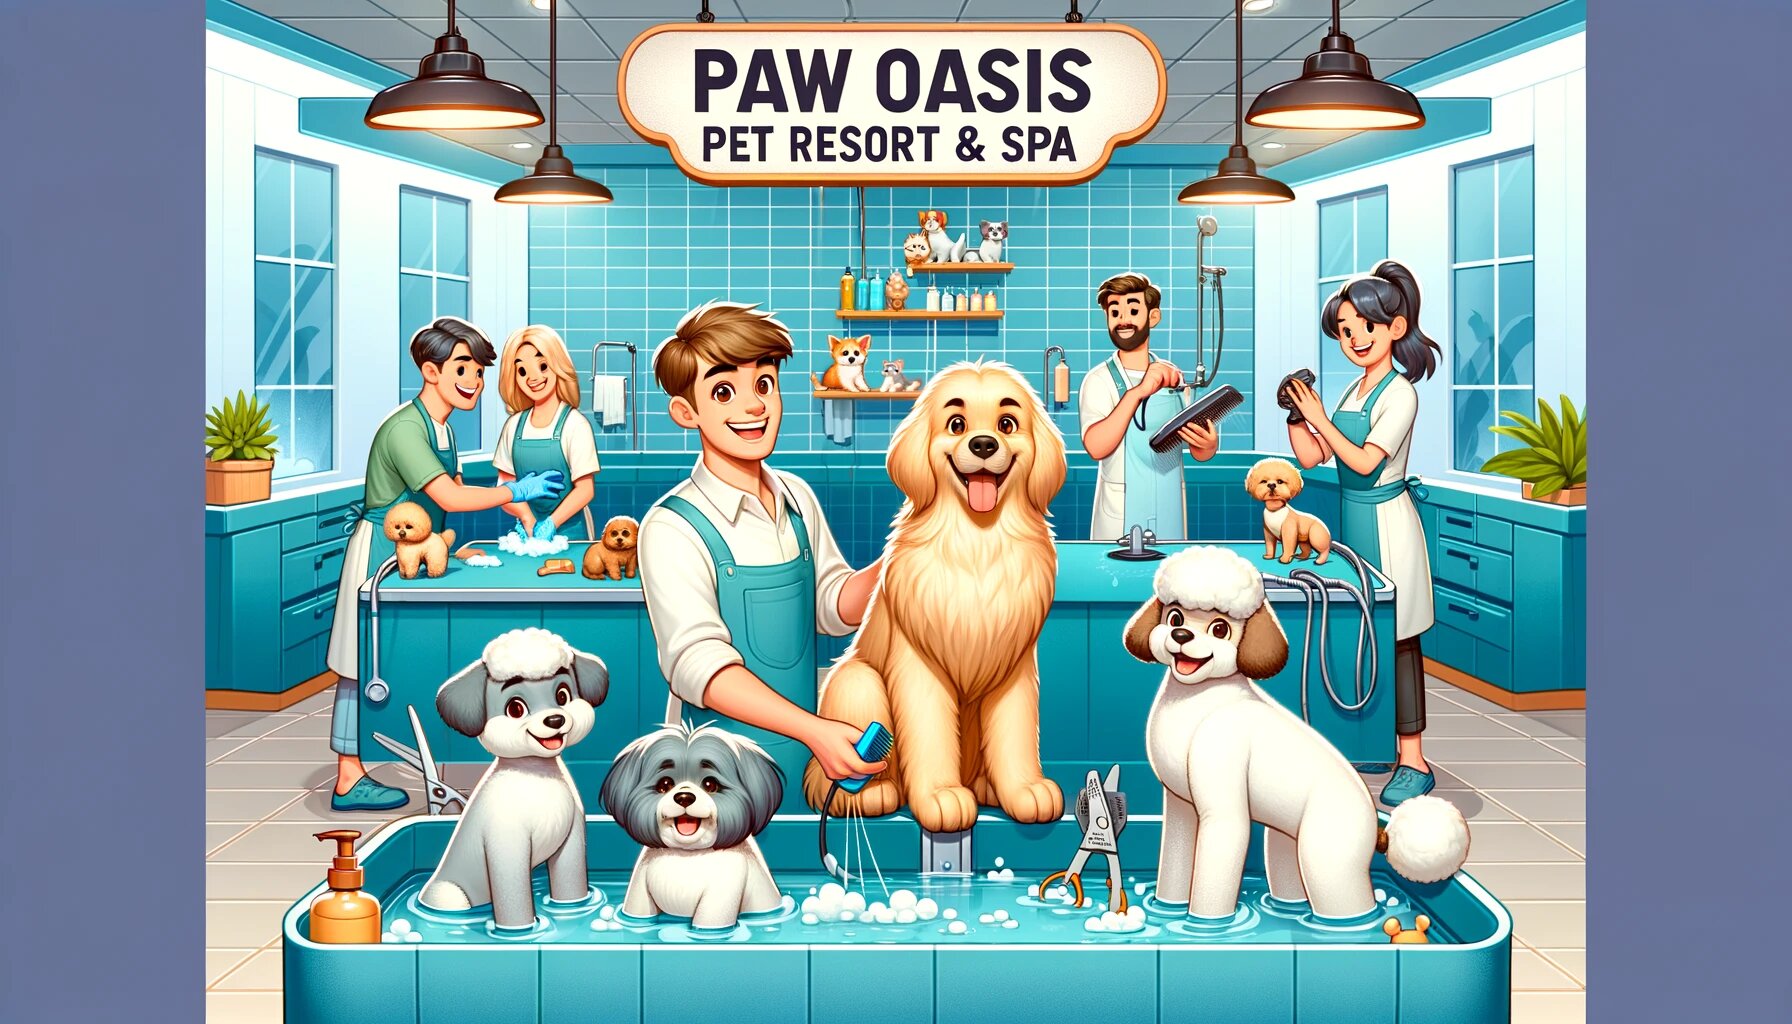 Paw Oasis Pet Resort & Spa